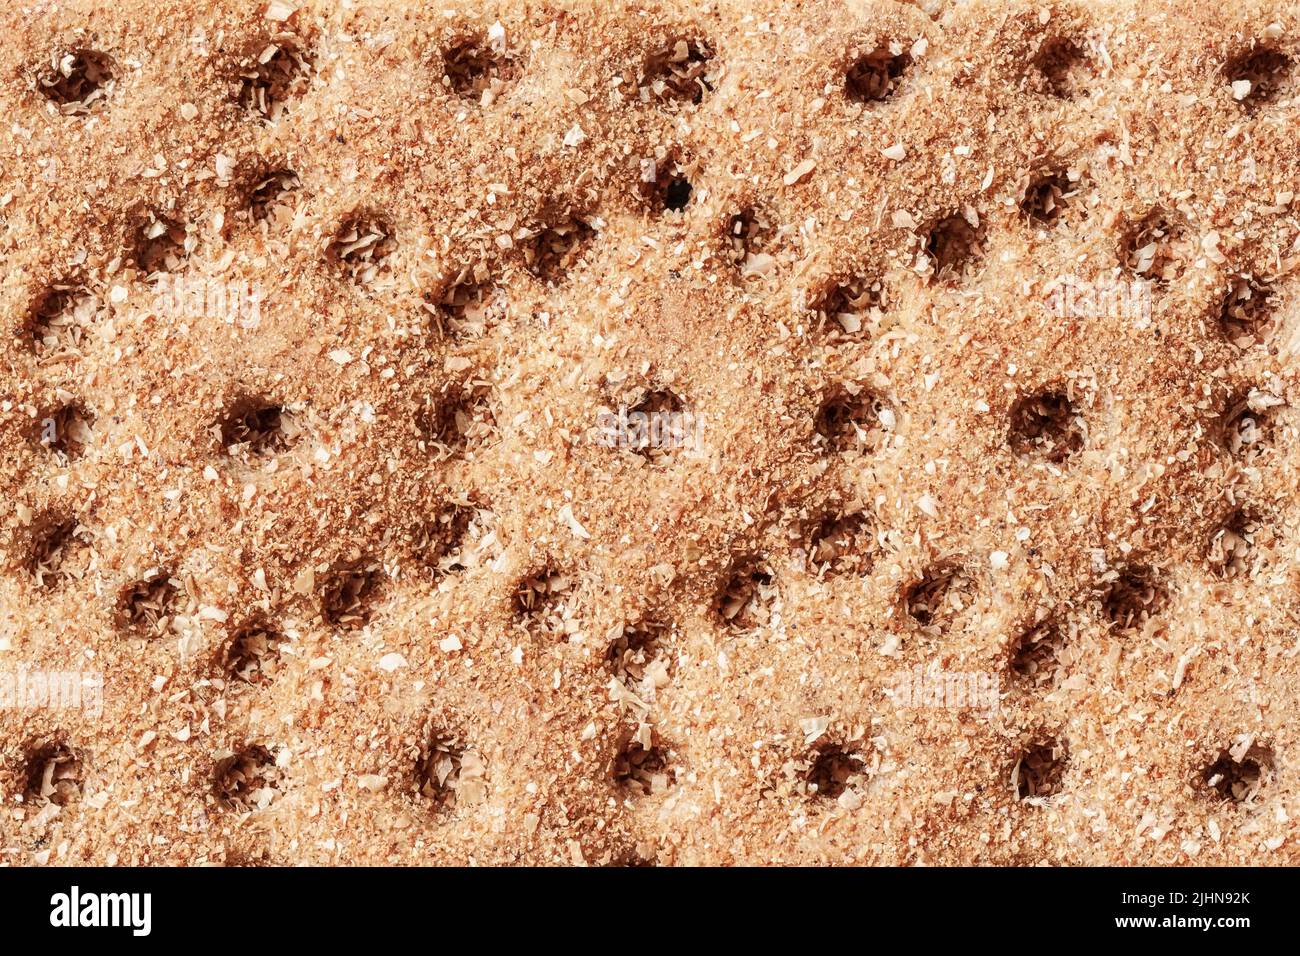 Trama di croccante di segale con semi di lino schiacciato, sesamo e girasole. Cracker dietetico Foto Stock